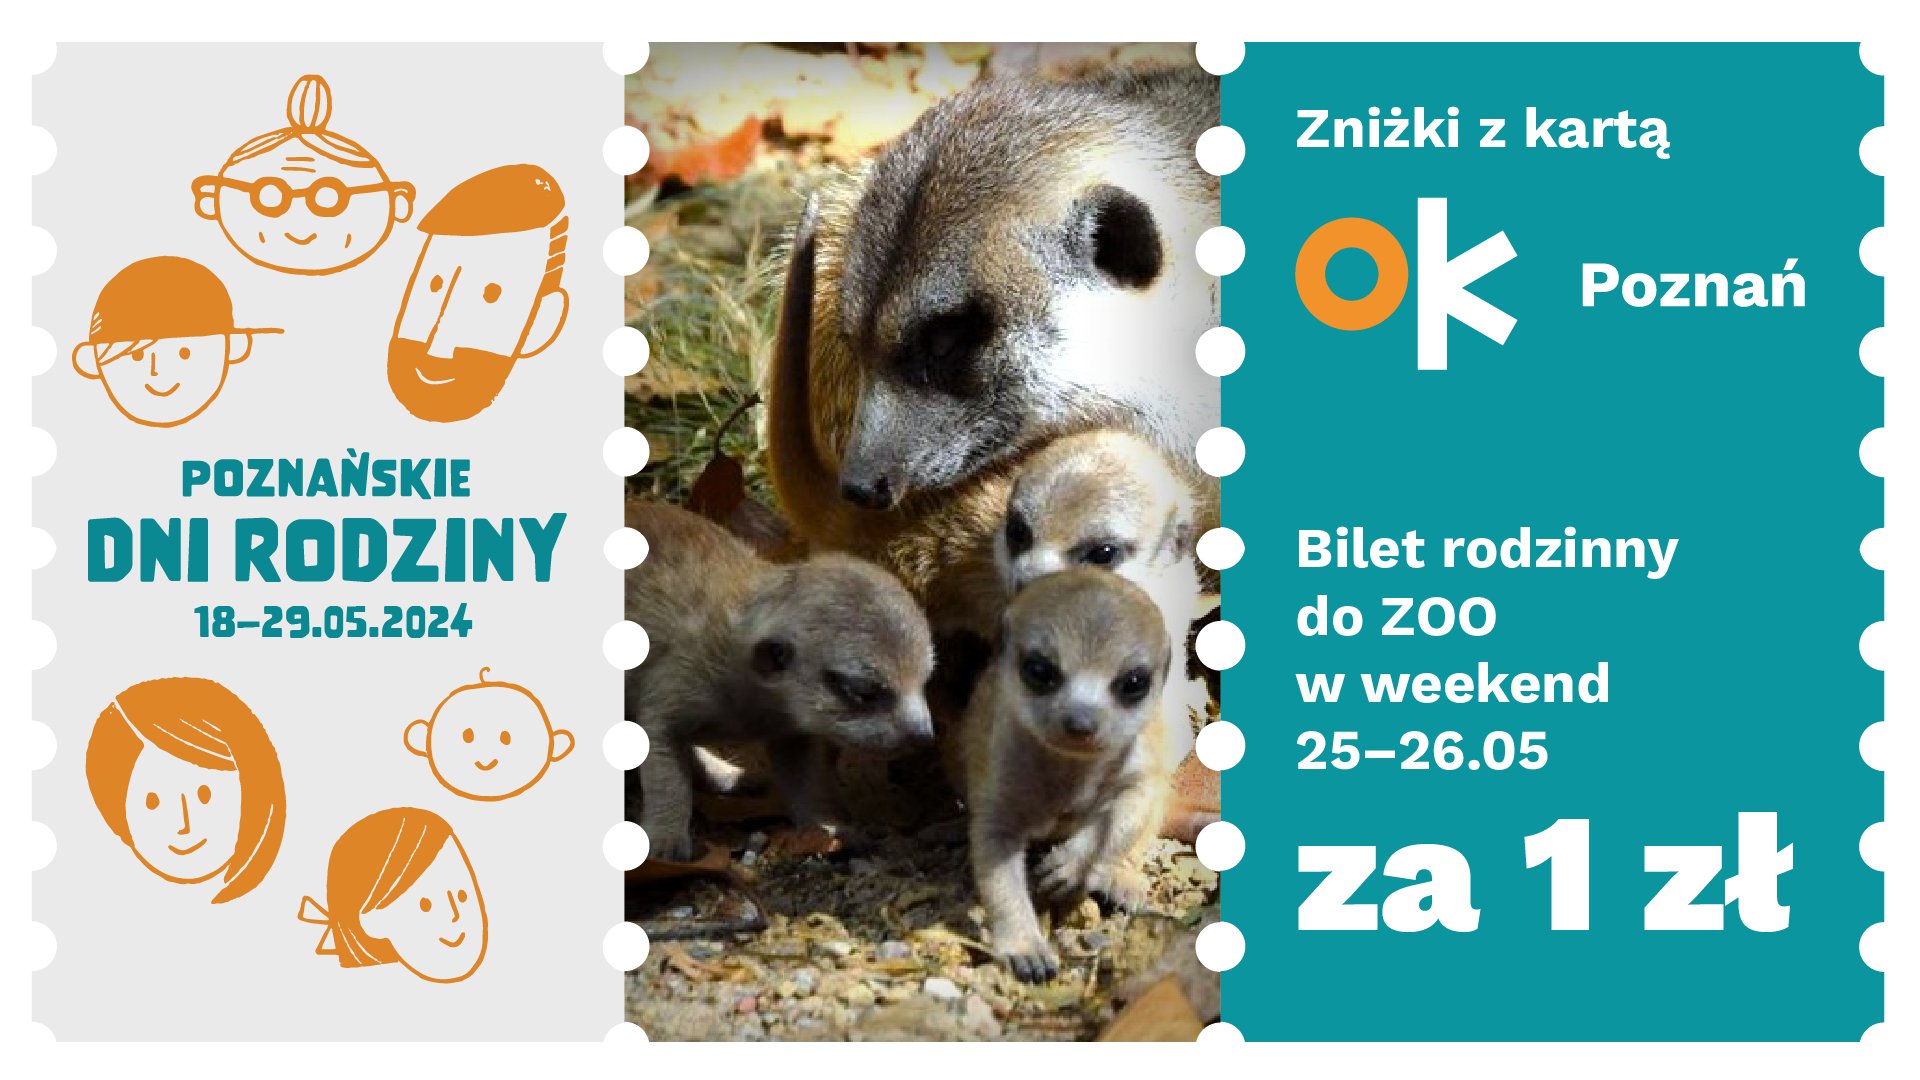 З 25 по 26 травня з карткою OK Poznań можна буде скористатися багатьма знижками